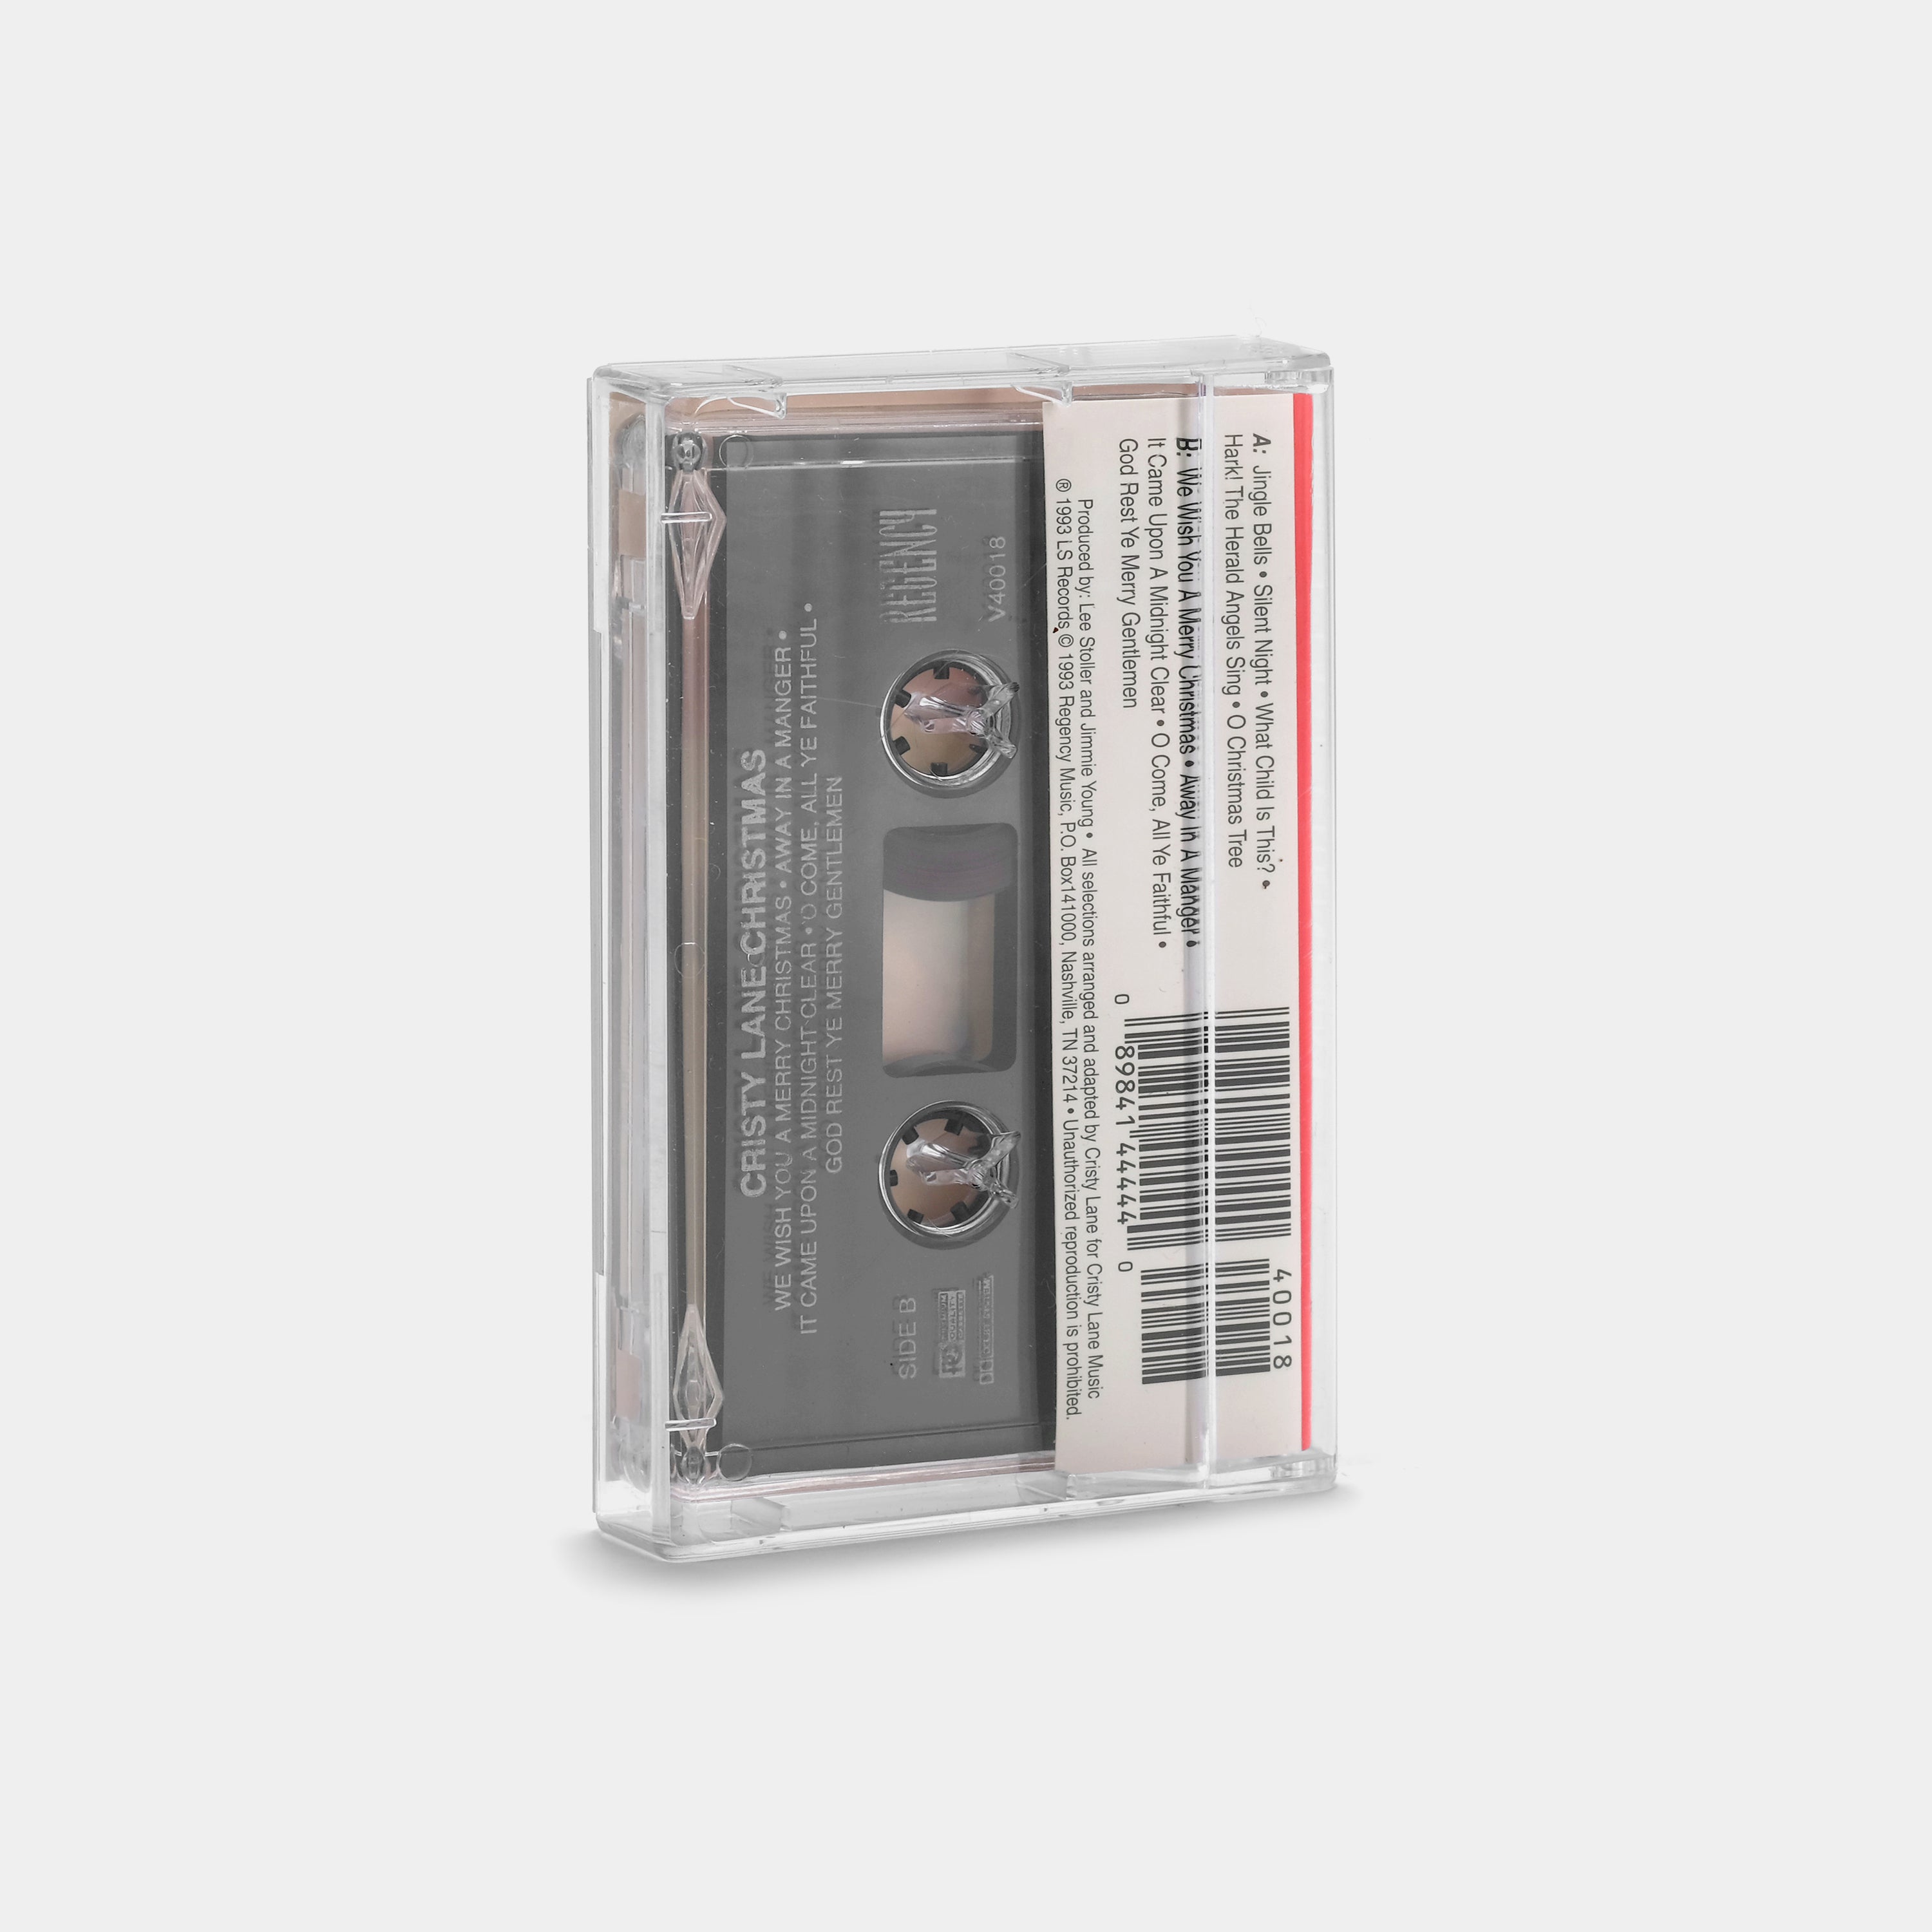 Cristy Lane - Cristy Lane Christmas Cassette Tape